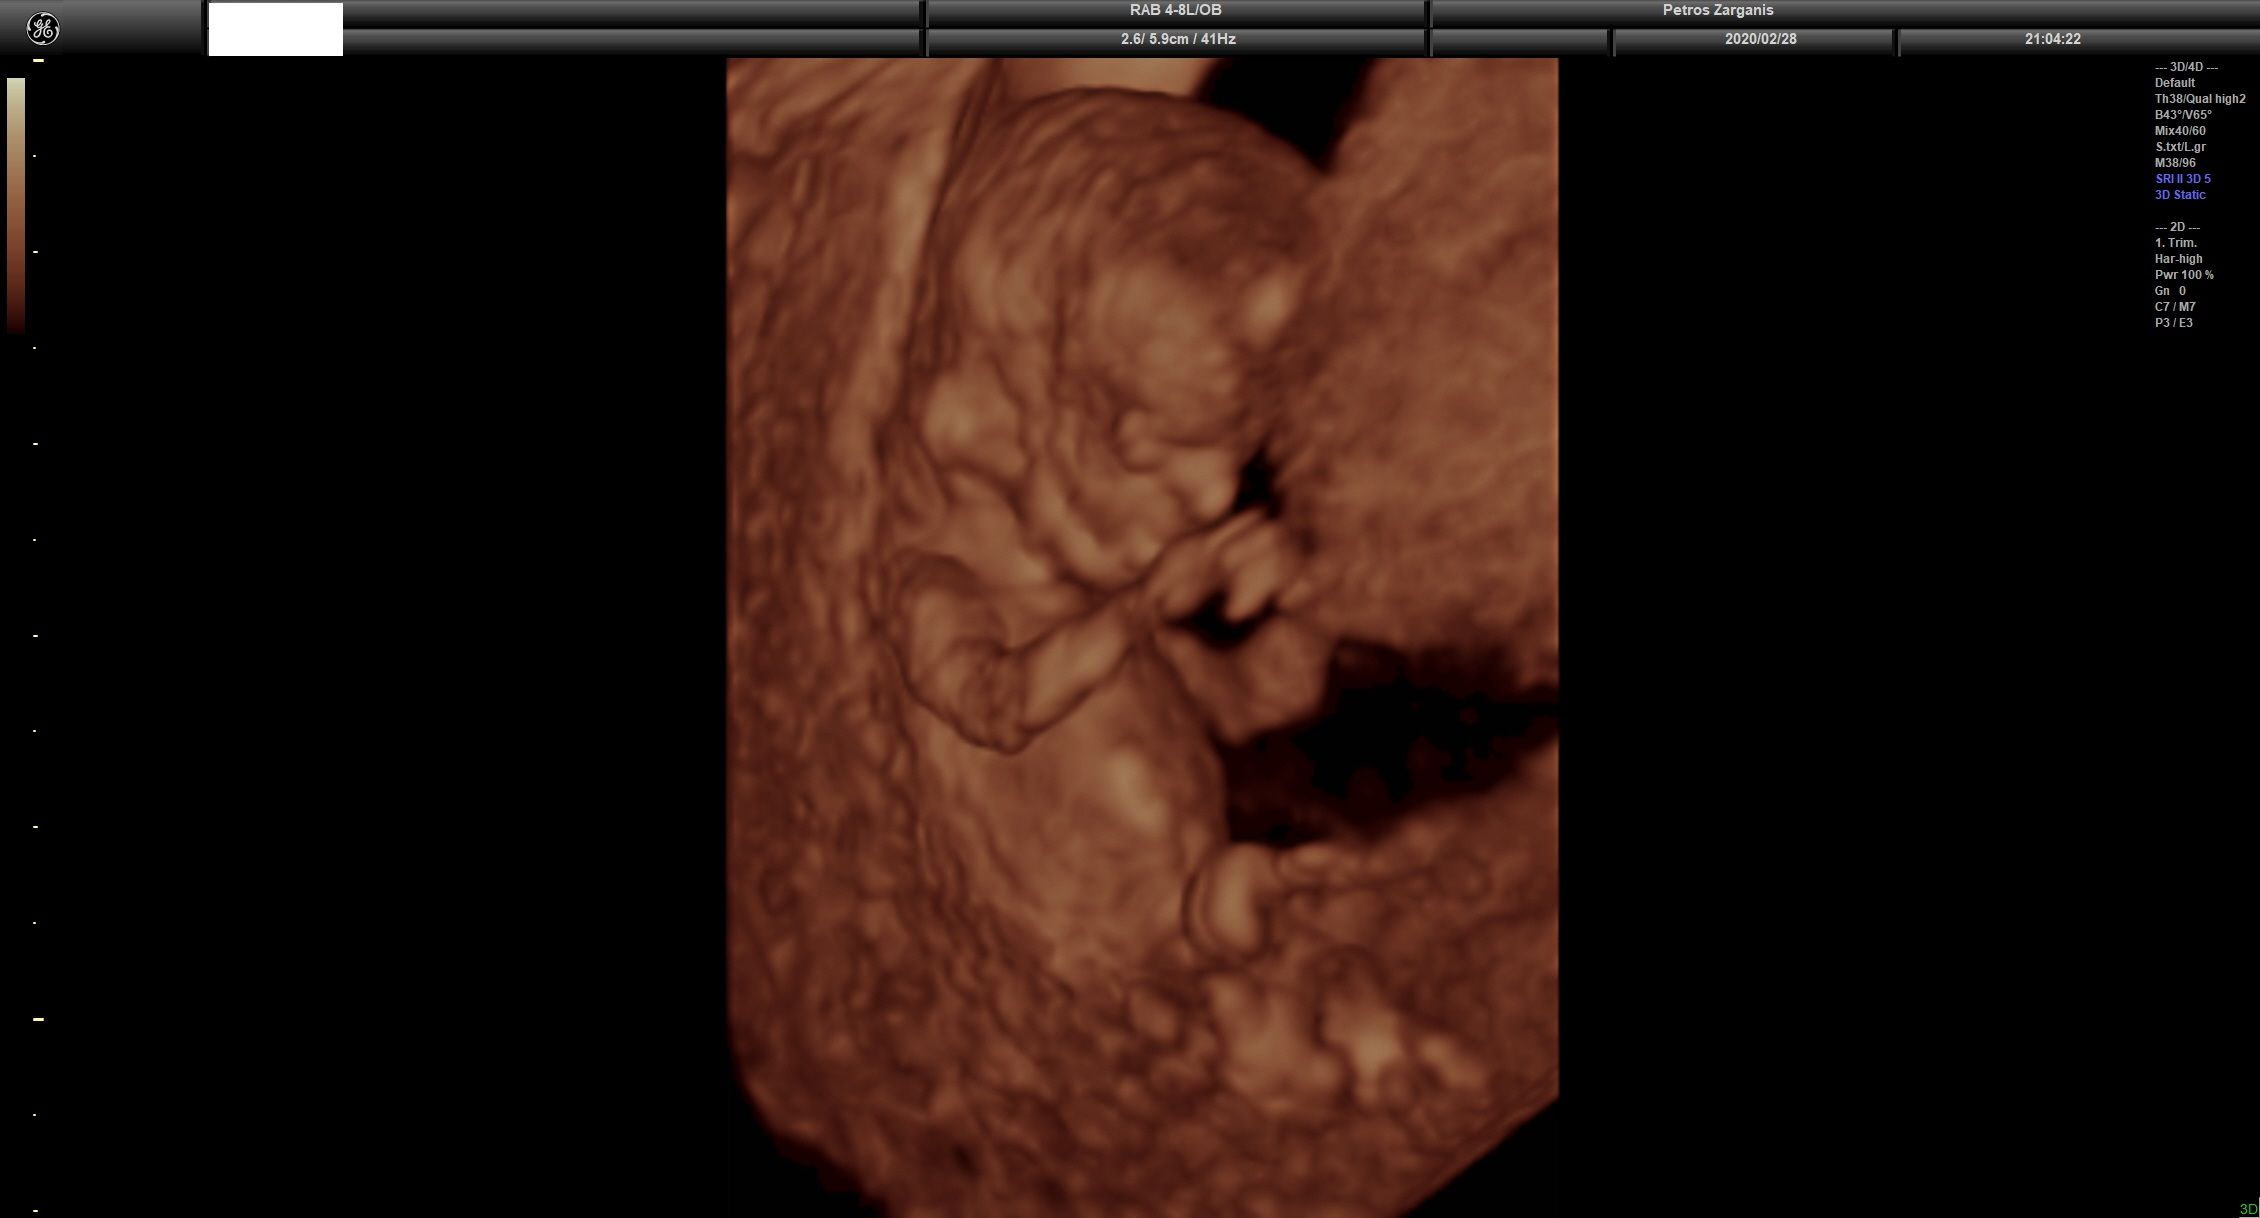 Εμβρυο 11 εβδομάδων +2 ημερών τρισδιάστατη απεικόνιση , σε εγκυμοσύνη με κολπική αιμόρροια και ευχάριστη εξέλιξη [3]